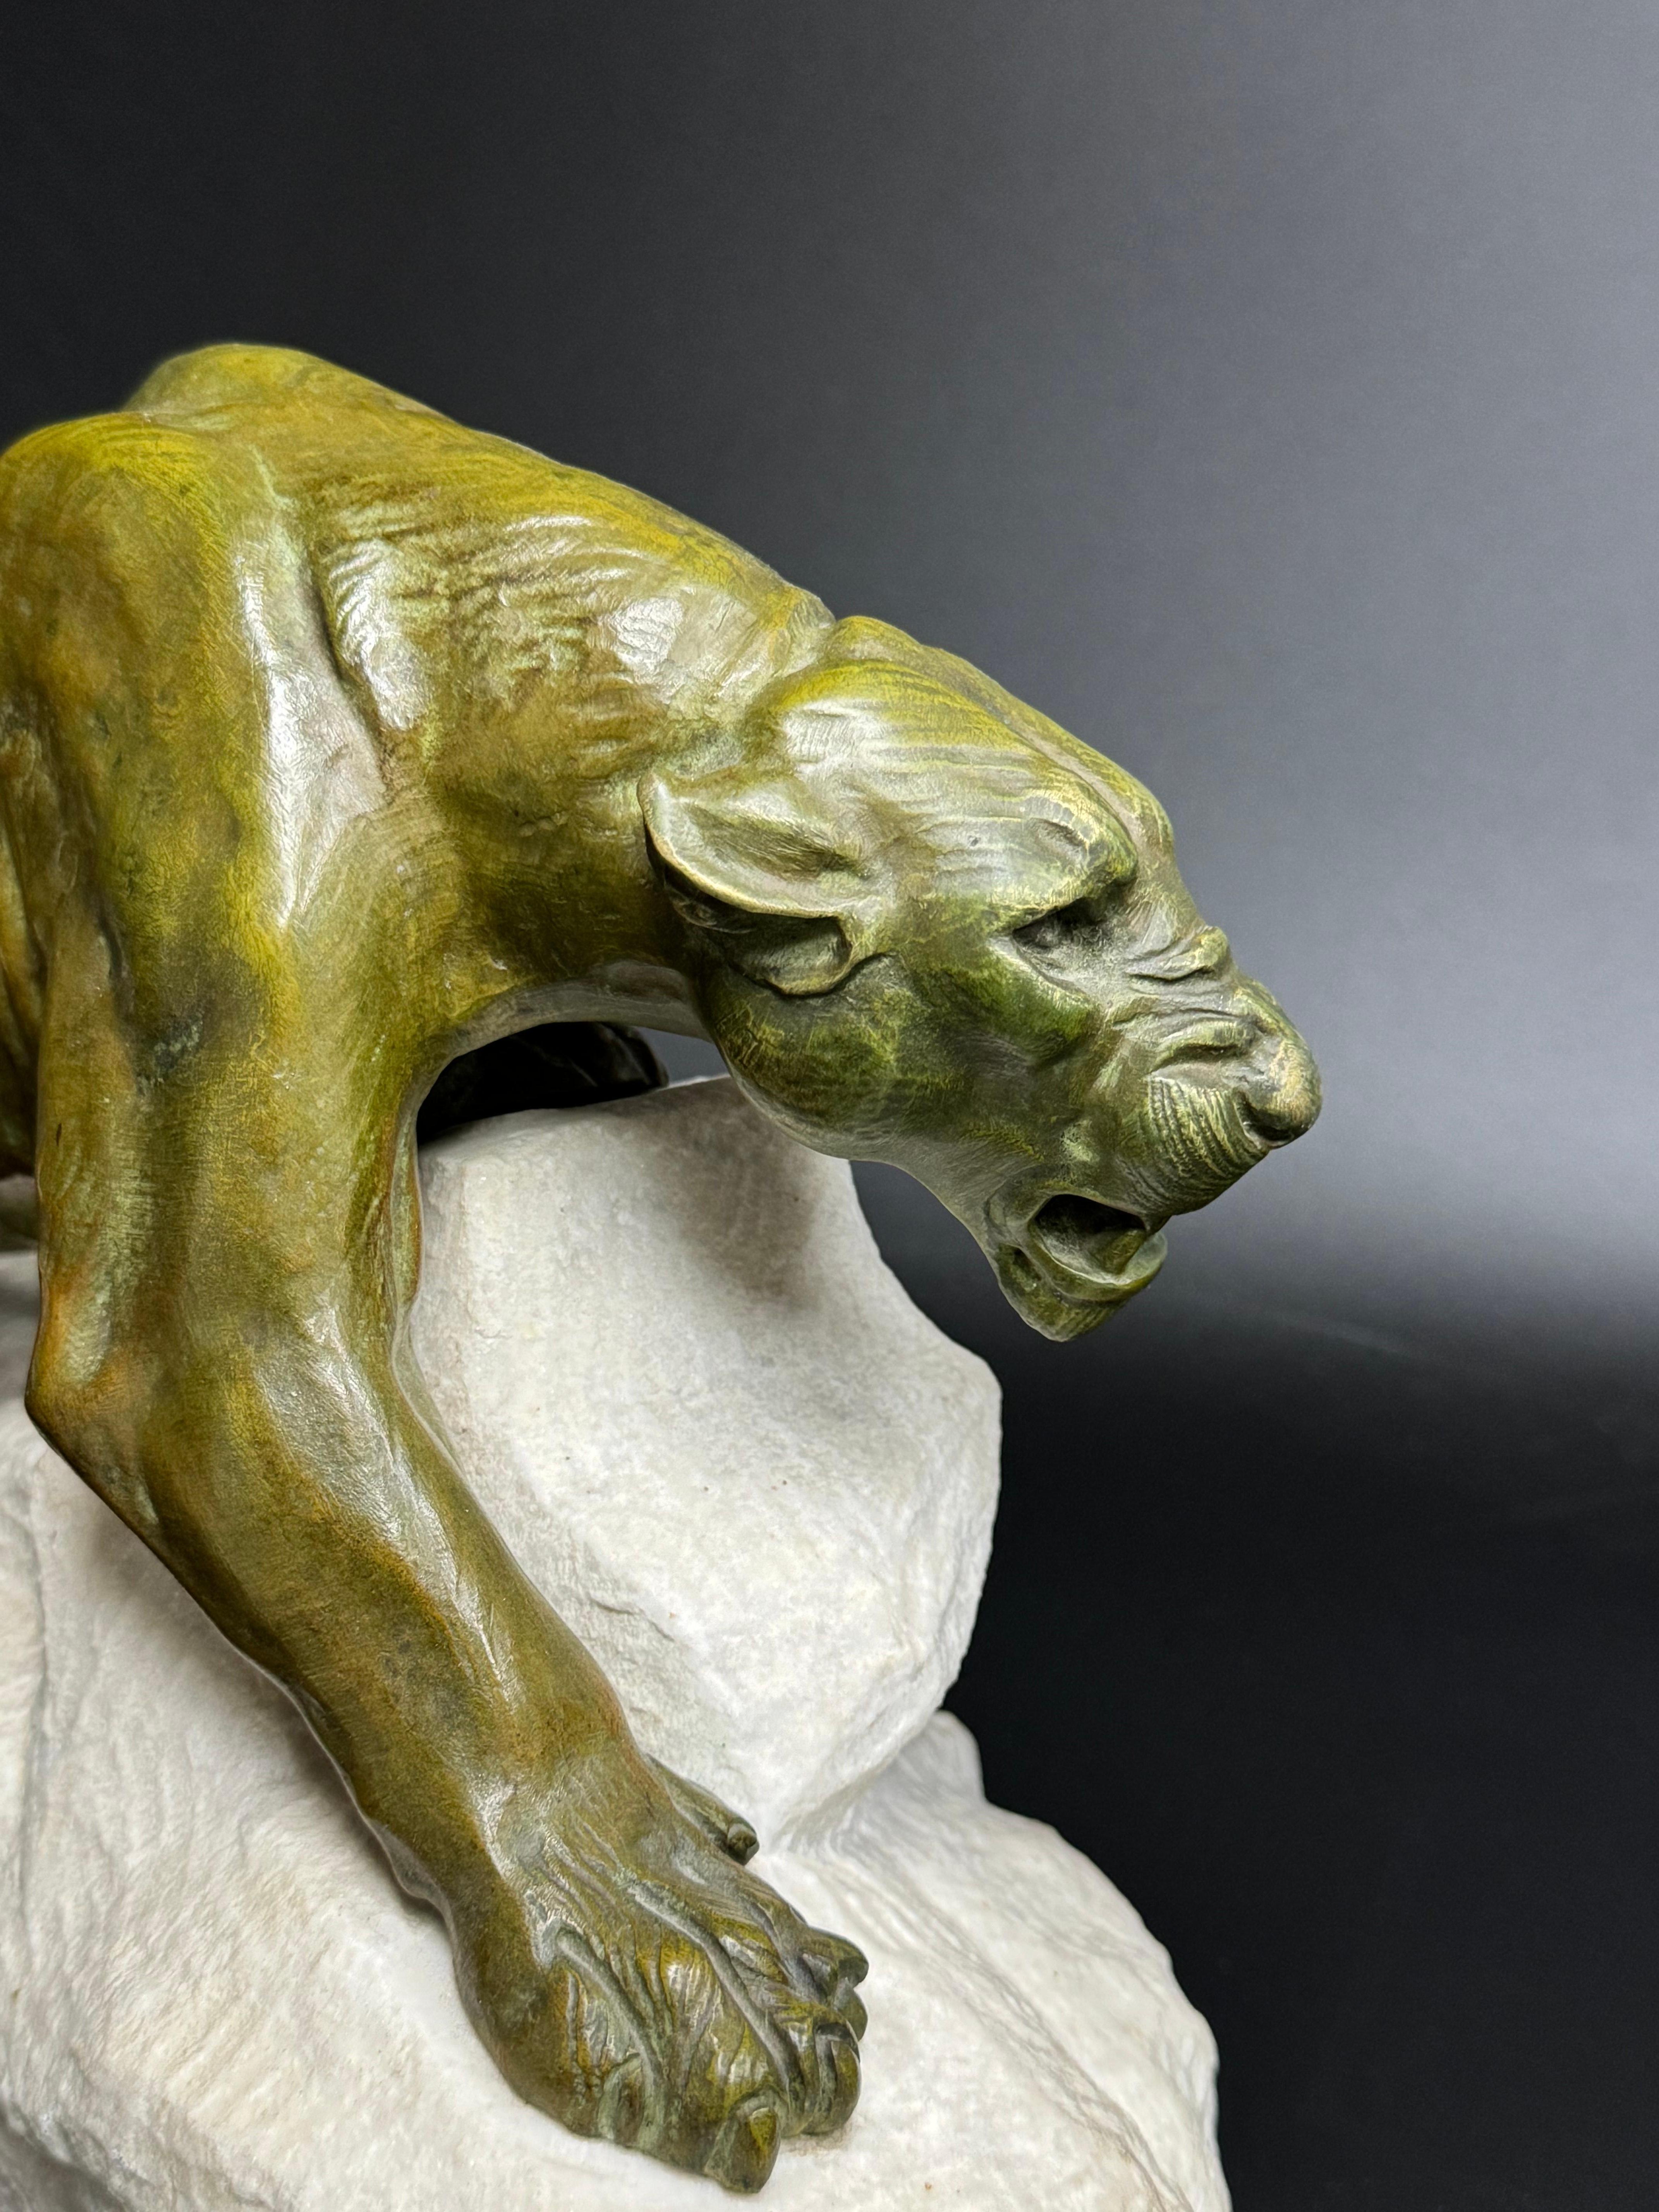 Clovis-Edmond MASSON (1858-1913)
Panthère
Sculpture en bronze ciselé et patiné à nuance verte.
Signé sur la base en marbre blanc
H. 24, L. 43 cm

Clovis-Edmond Marli, né à Paris le 7 mars 1838 et mort en 1913, sculpteur animalier français.

Clovis